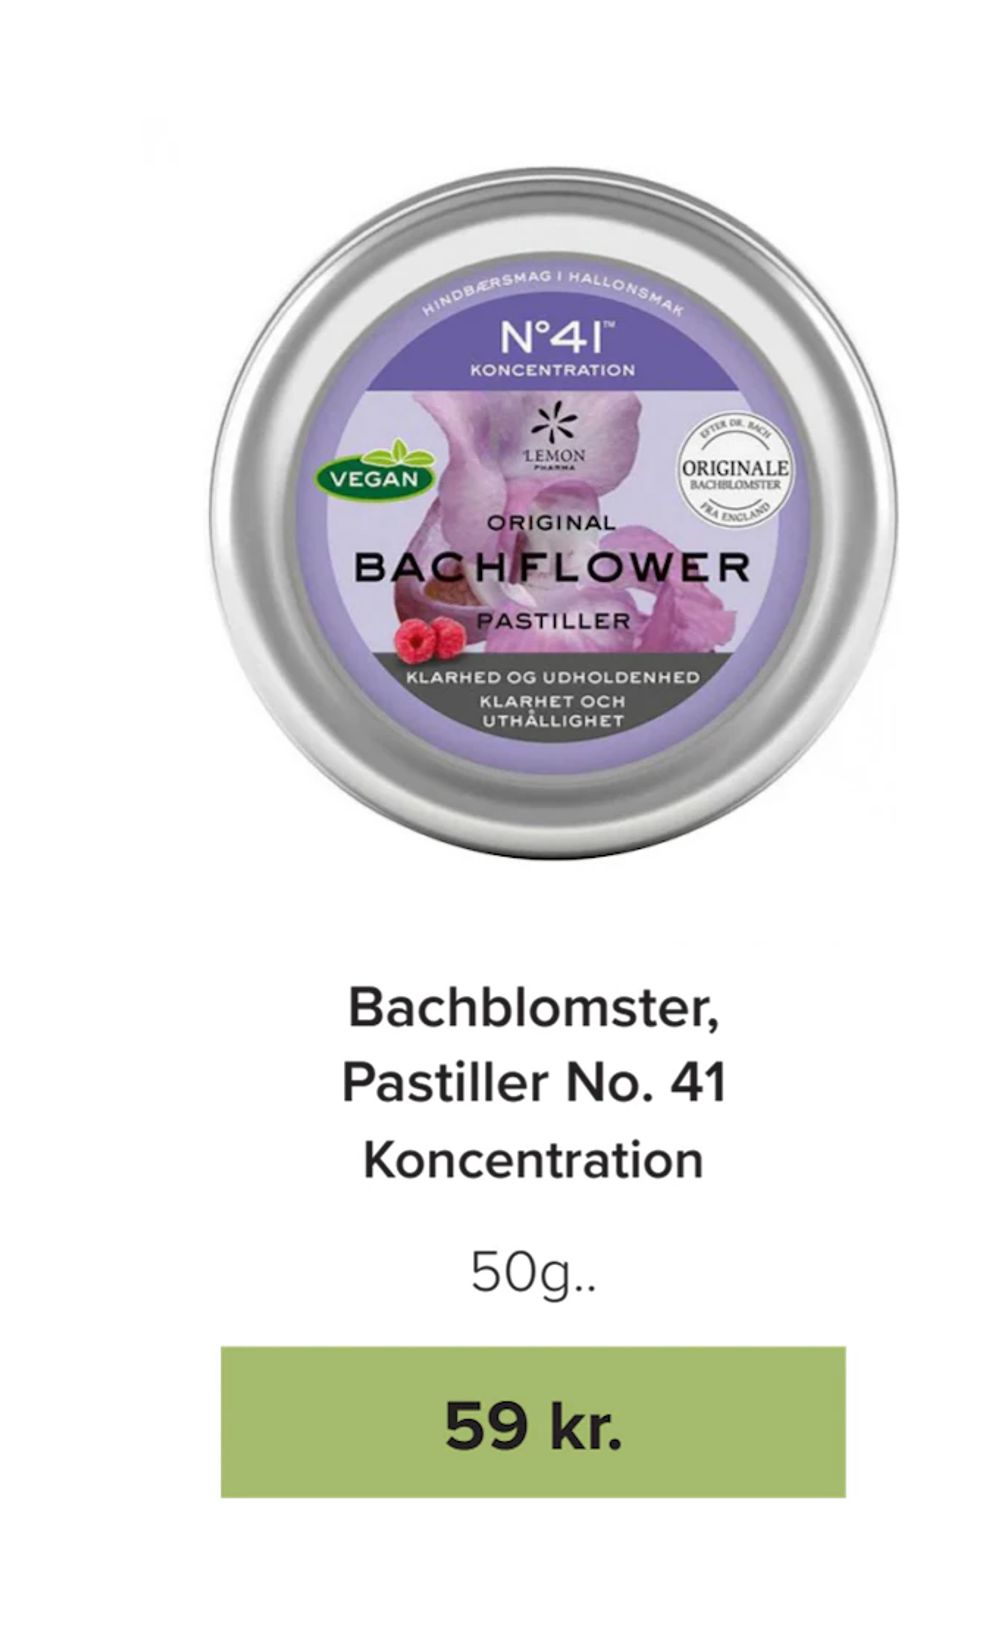 Tilbud på Bachblomster, Pastiller No. 41 fra Helsemin til 59 kr.